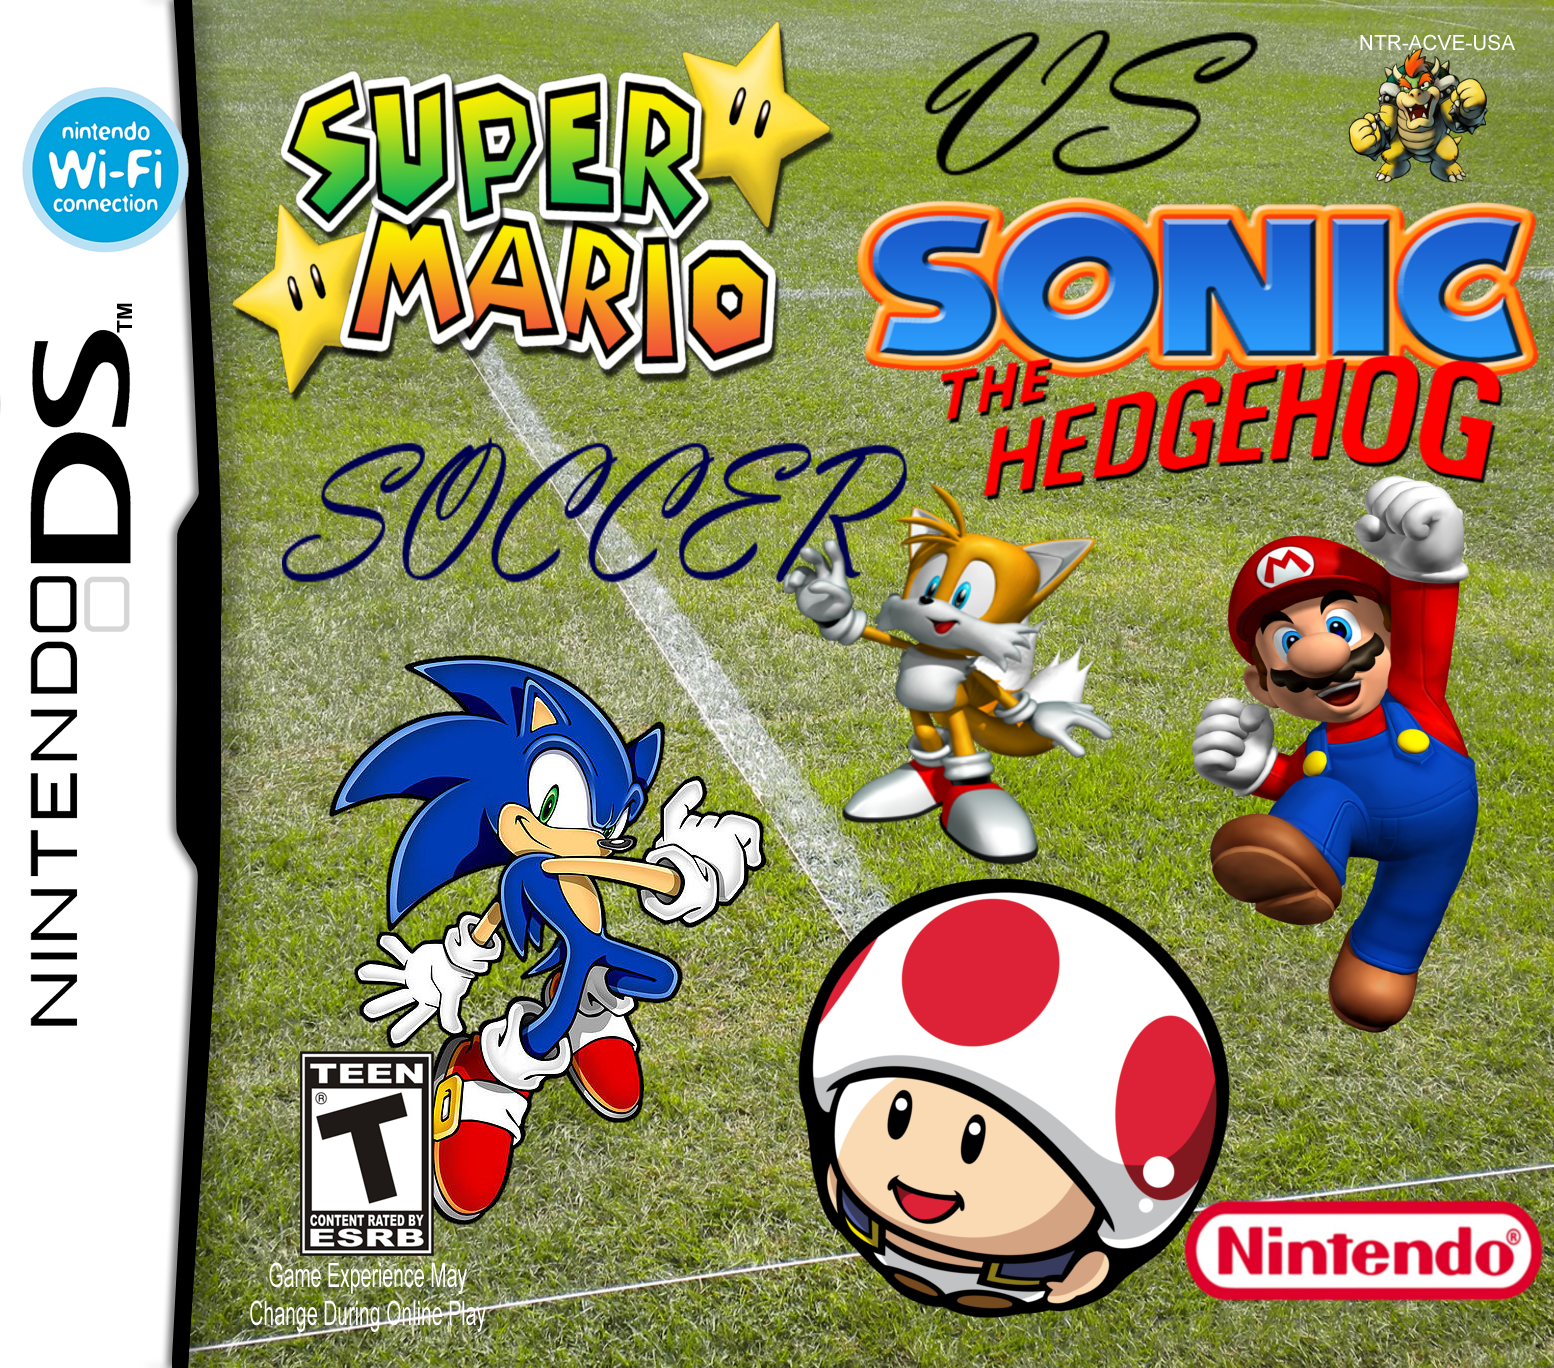 Mario vs. Sonic Soccer box cover